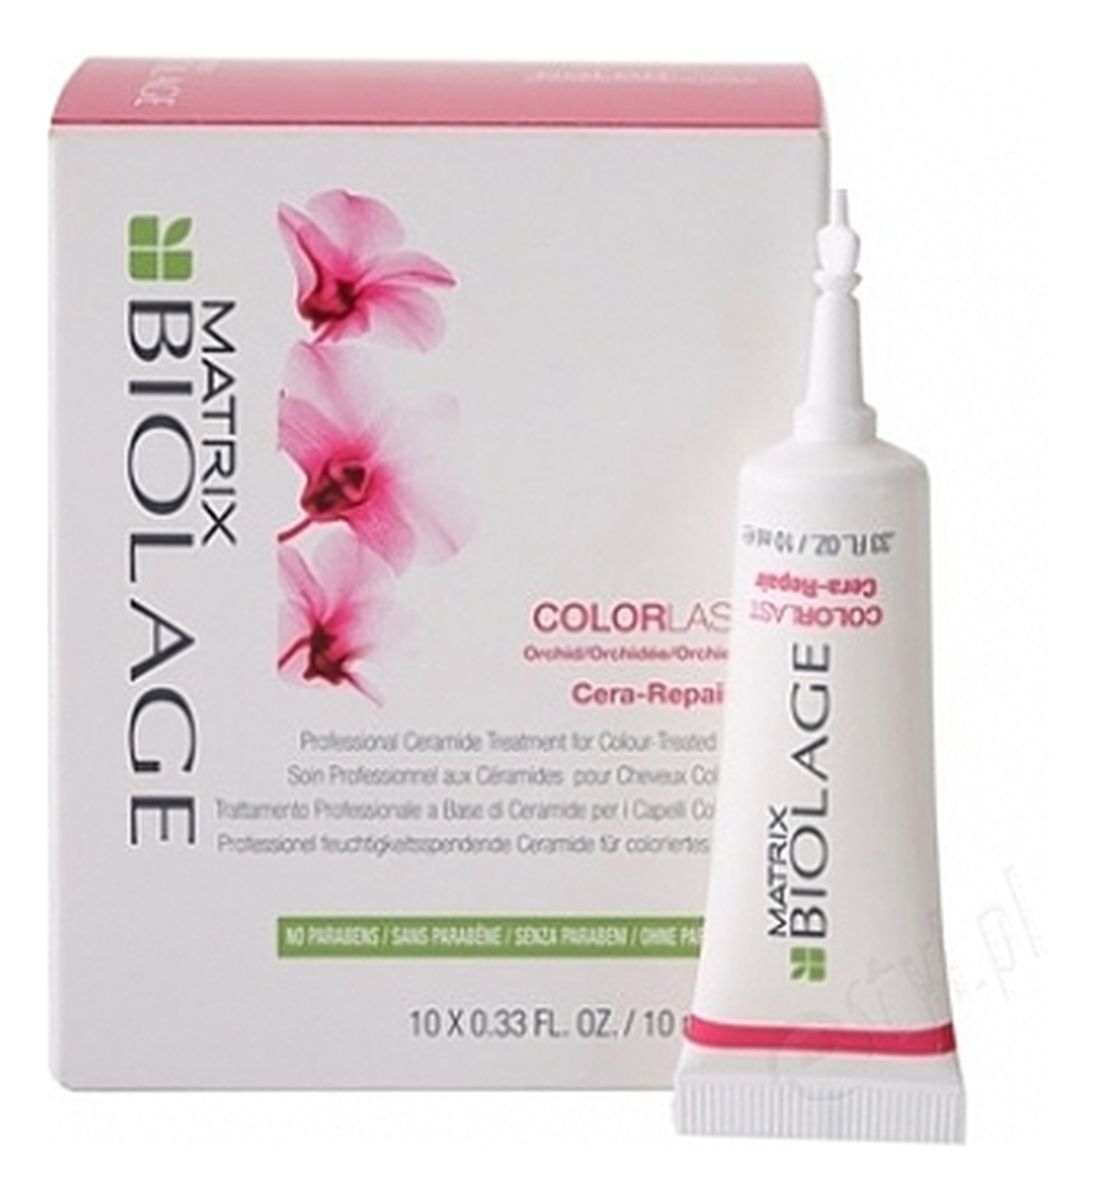 Colorlast Professional Ceramide Treatment For Colour - Treated Hair ampułki chroniące kolor włosów 10 x 10ml